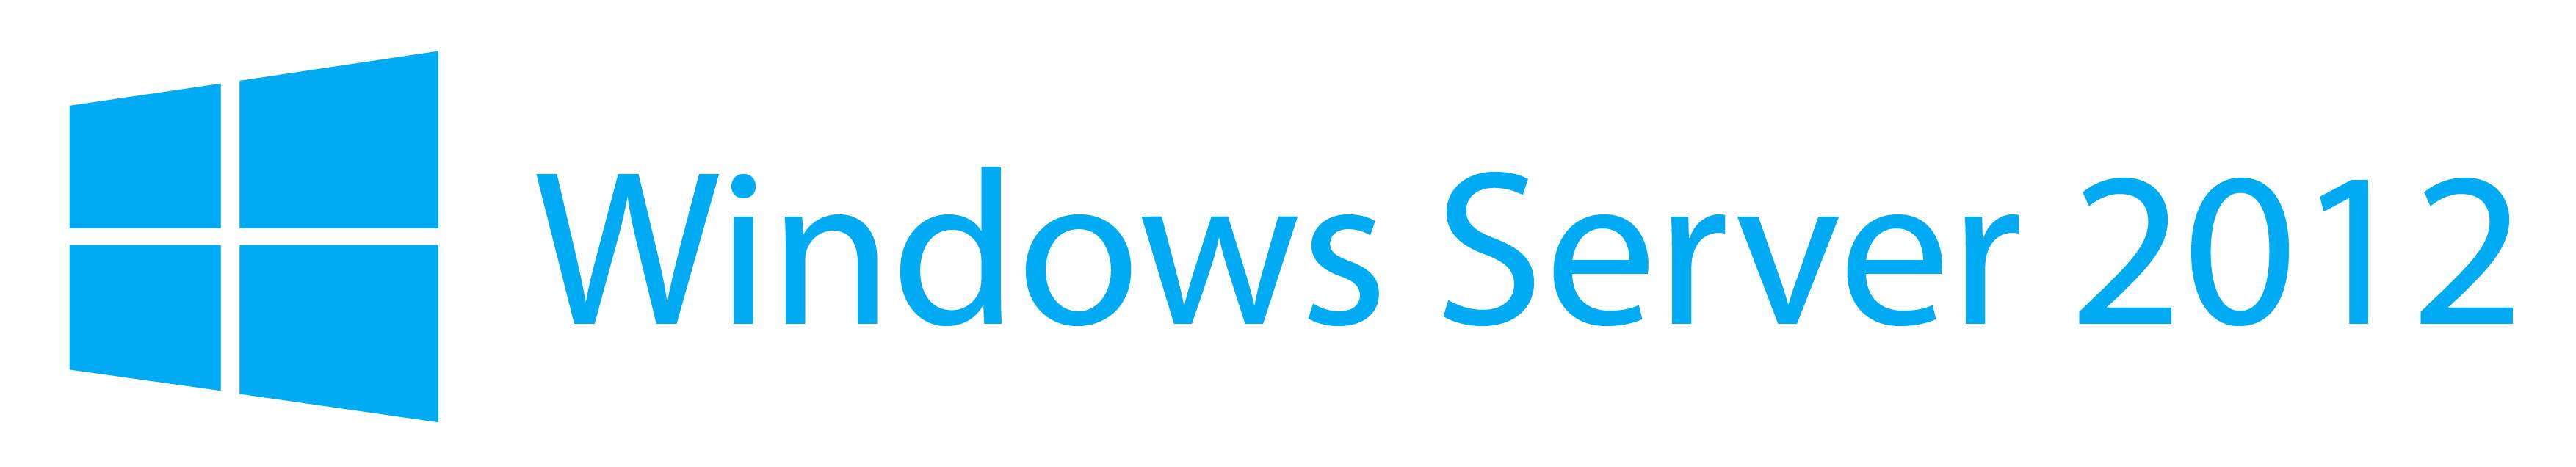 windows-server-2012-logo1